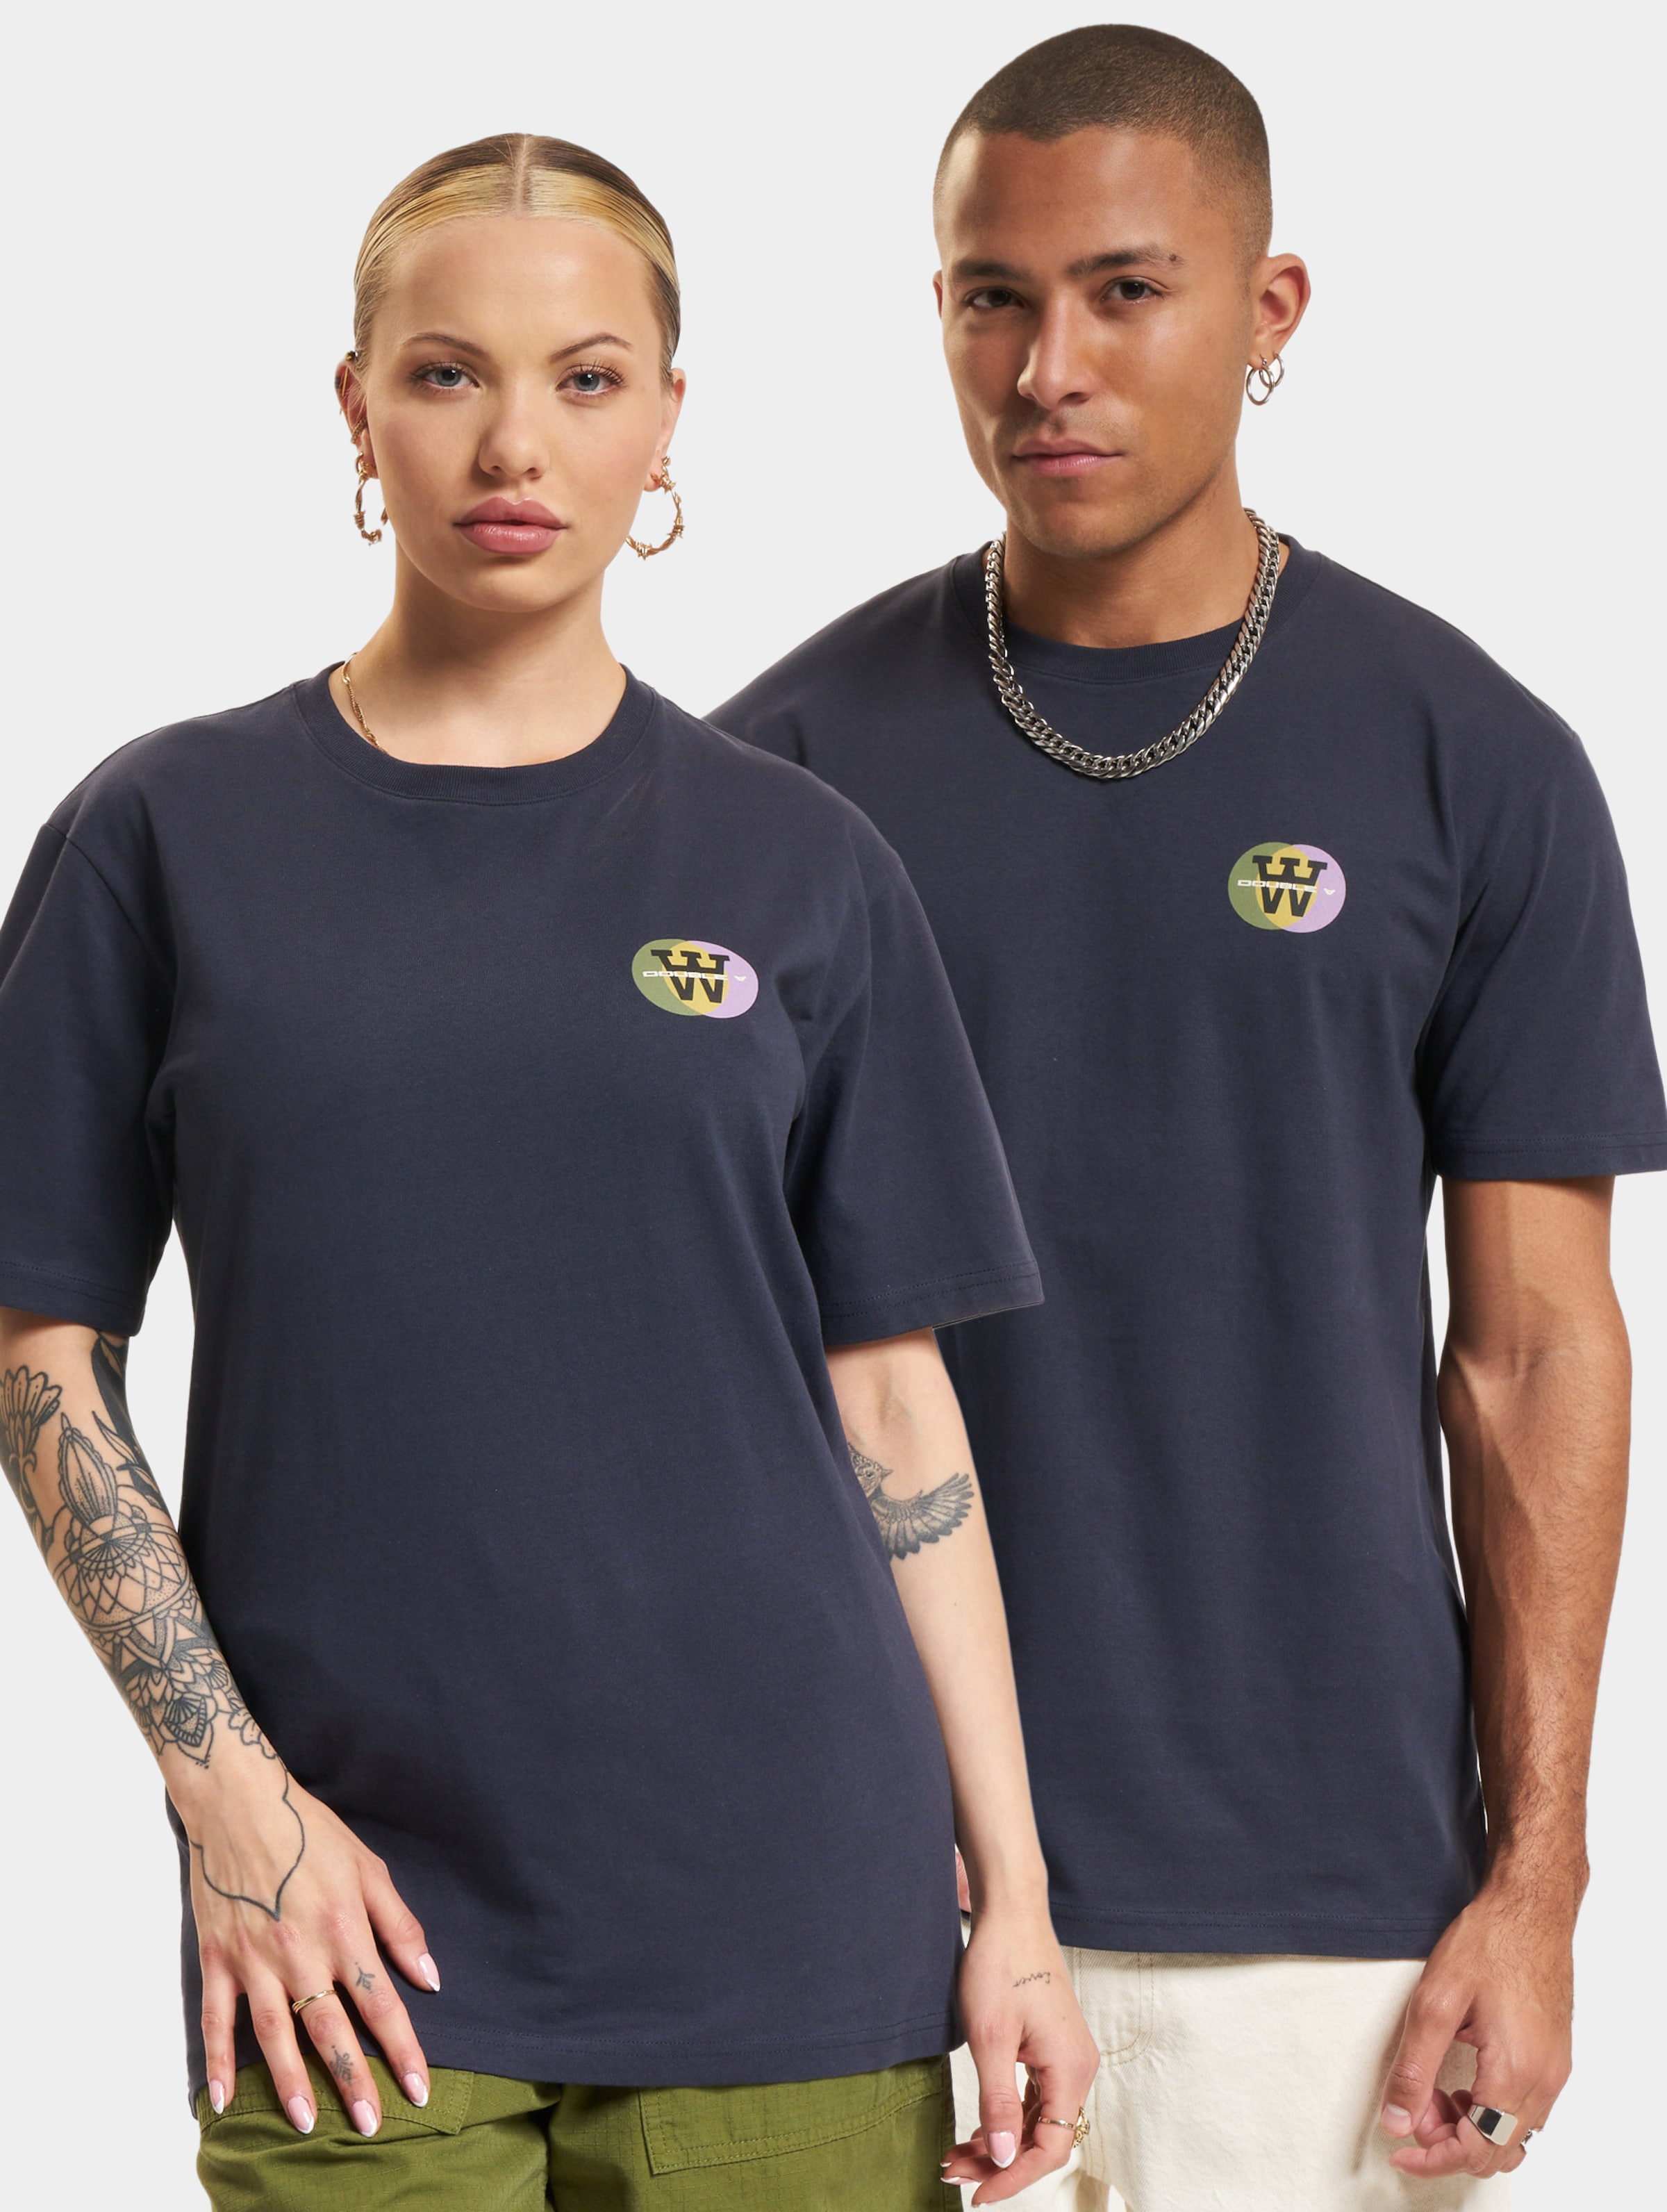 Wood Ace Eclipse T-Shirt Frauen,Männer,Unisex op kleur blauw, Maat L